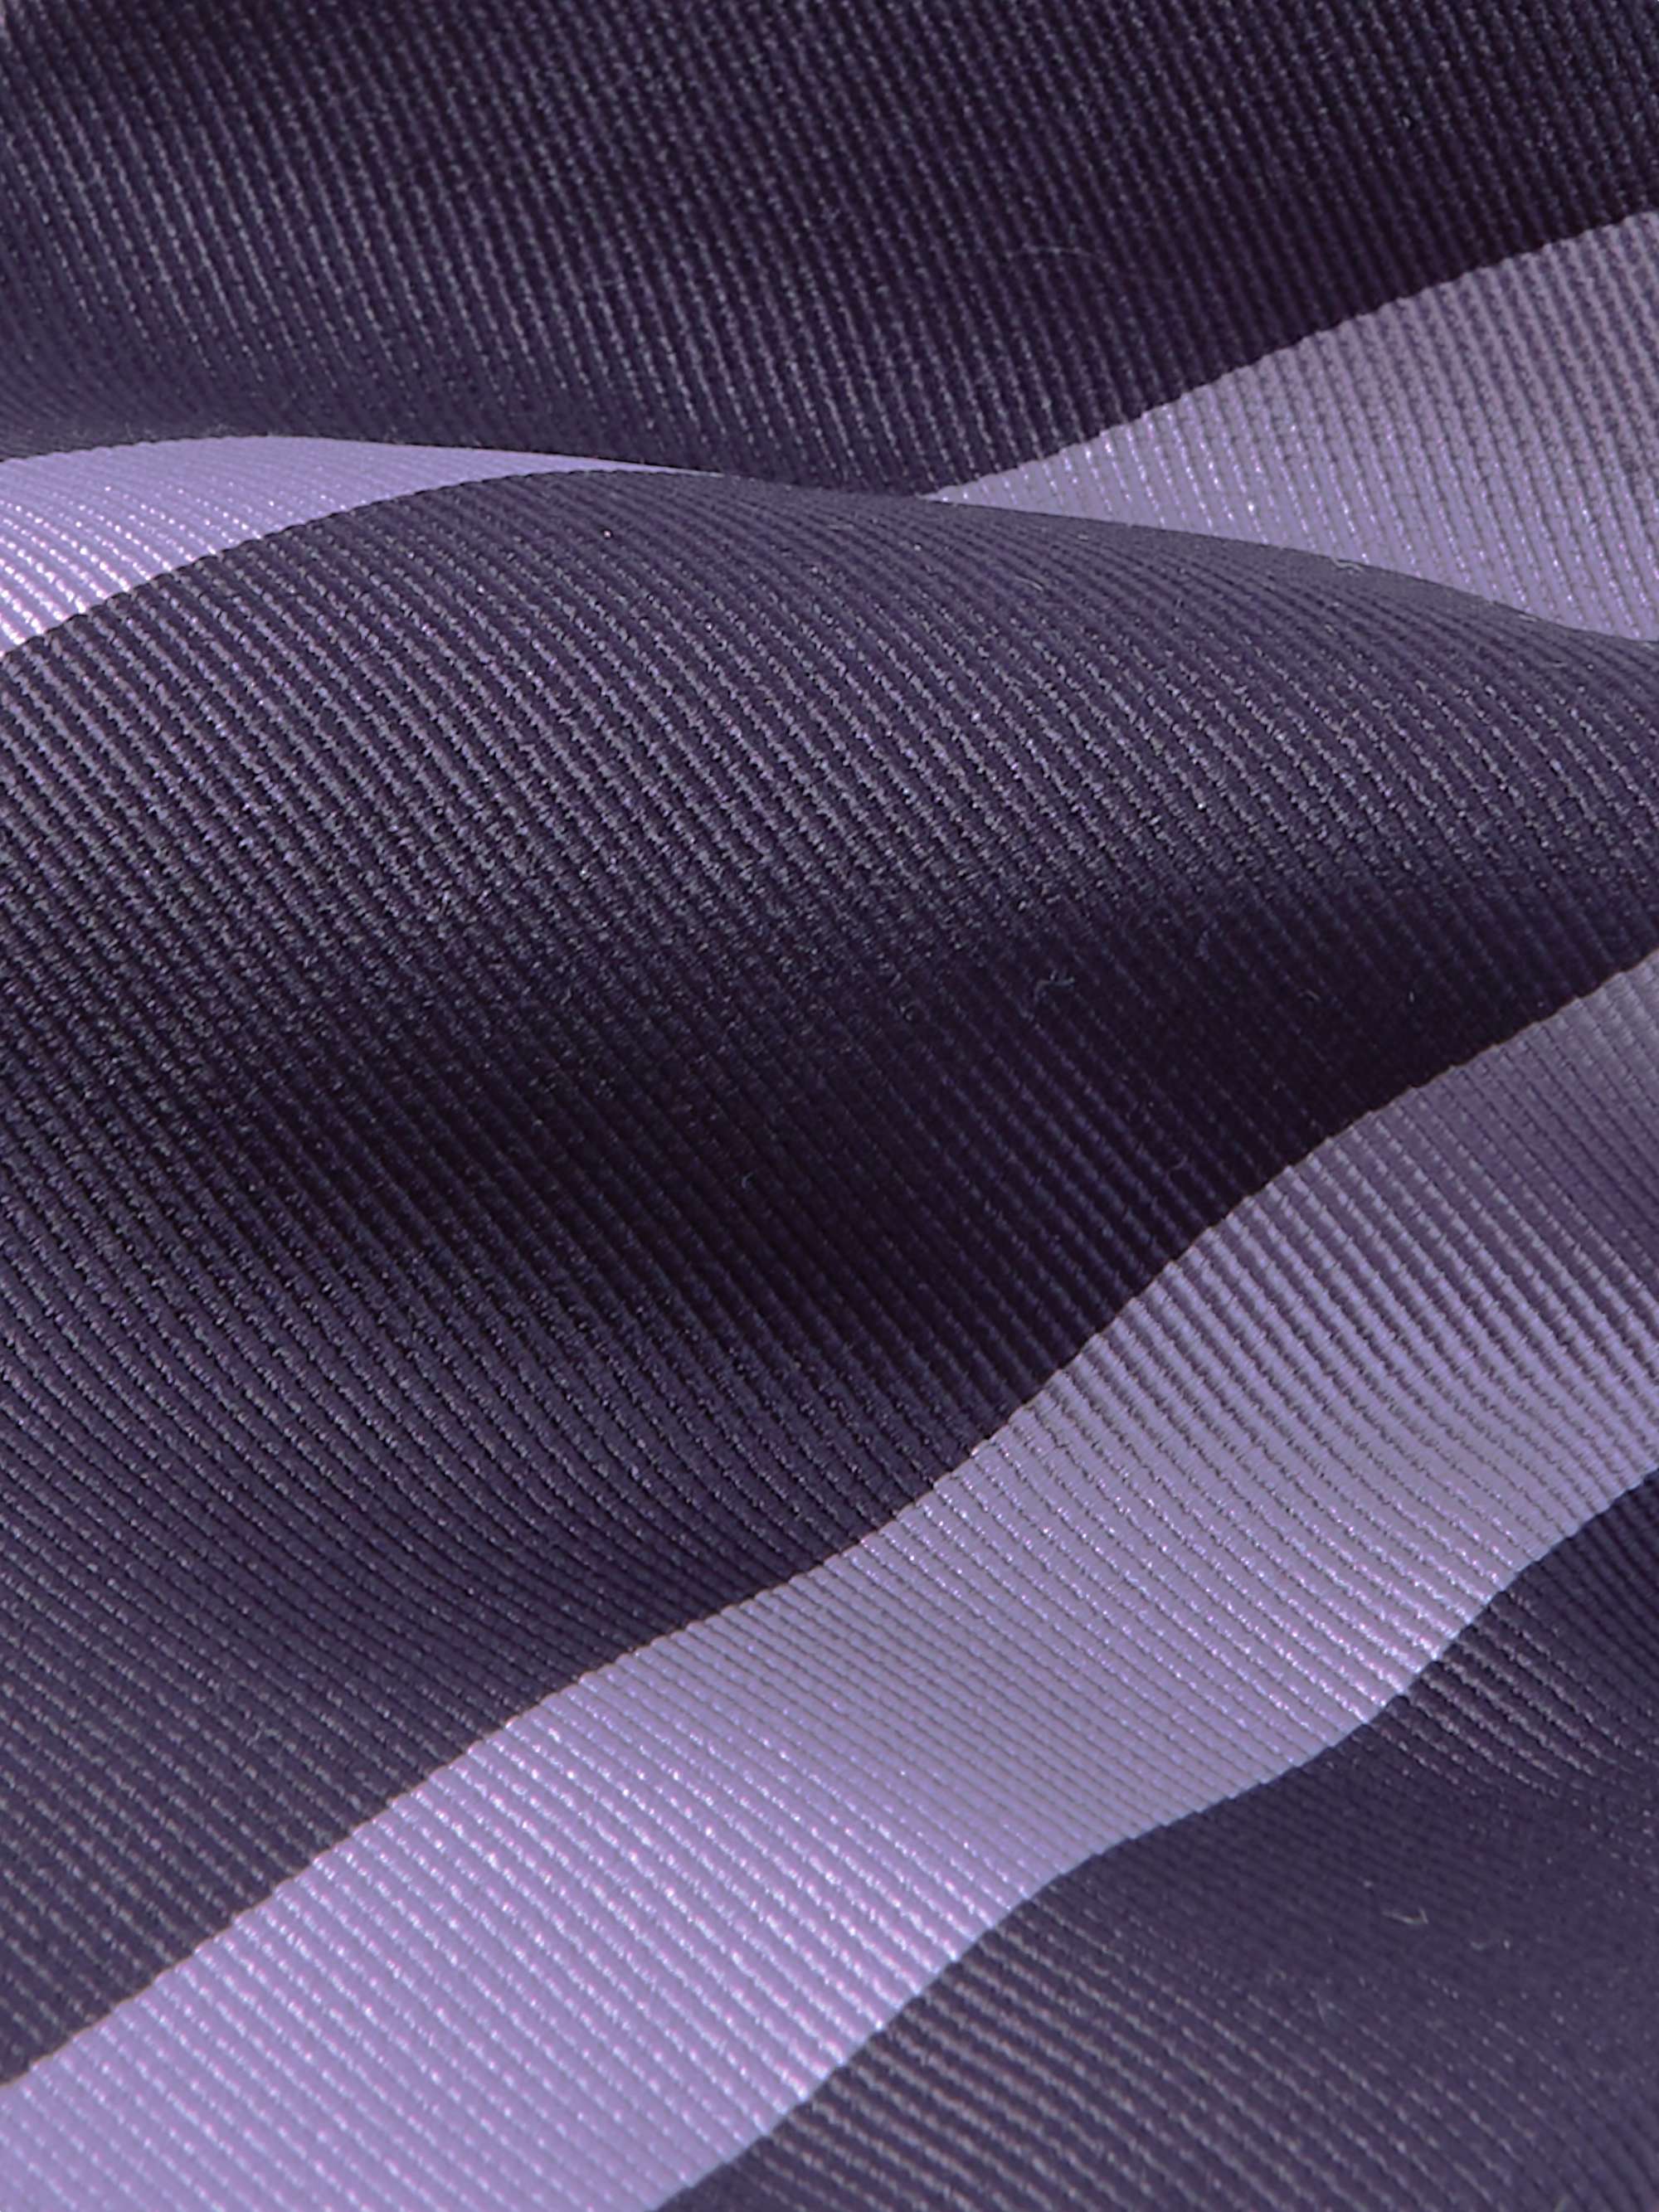 TOM FORD 8cm Striped Silk-Twill Tie